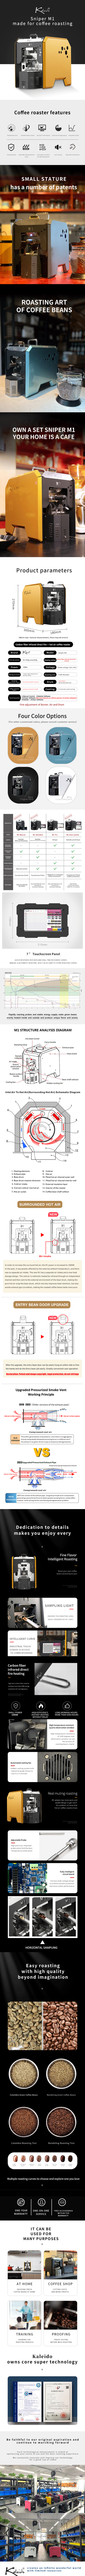 Artisan coffee roaster